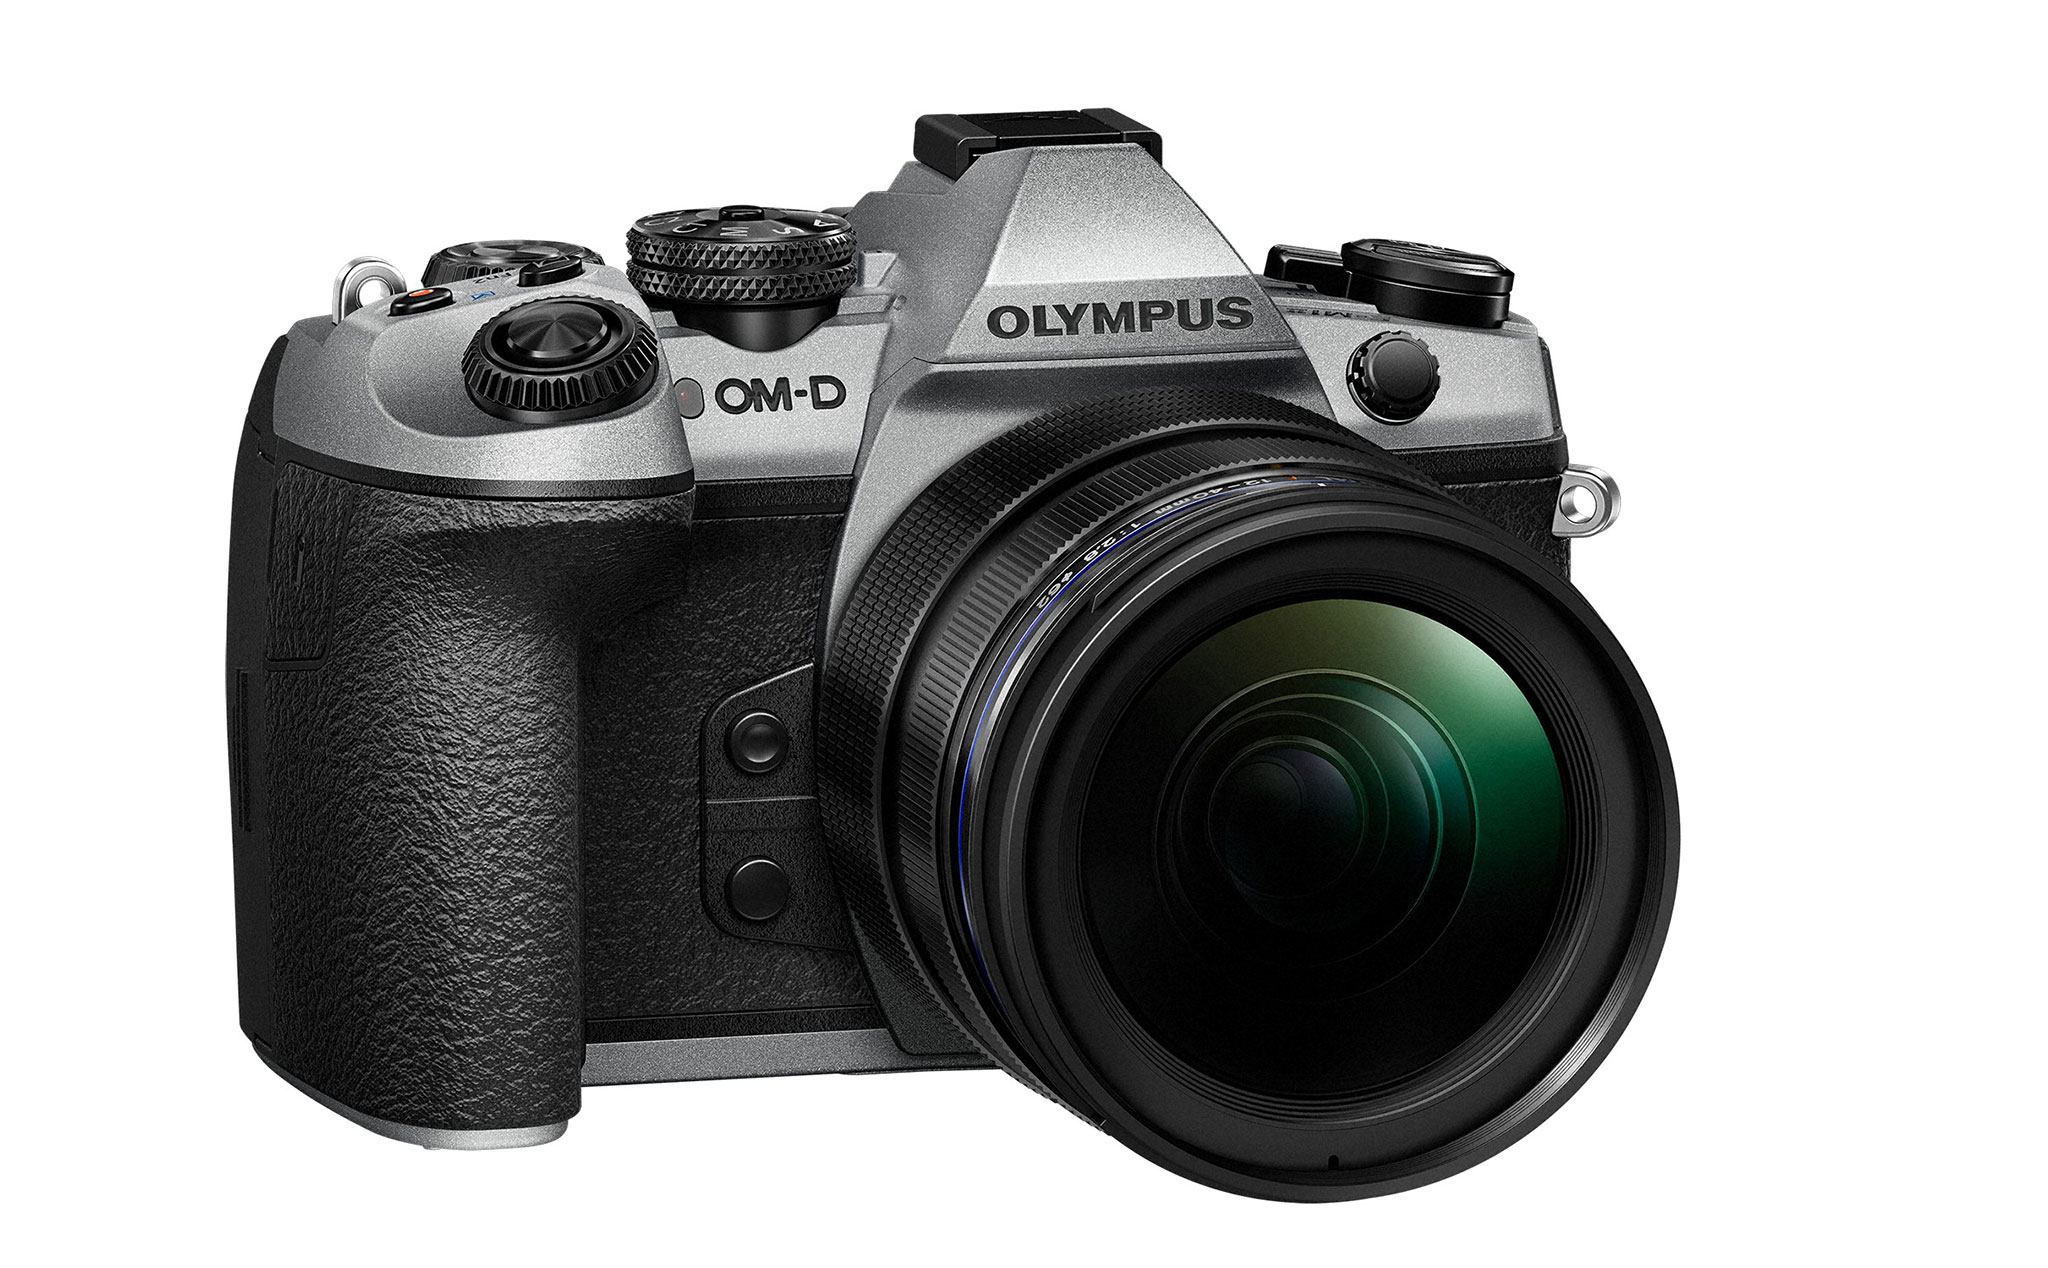 Olympus giới thiệu máy ảnh OM-D E-M1 Mark II bản giới hạn kỷ niệm 100 năm thành lập, bán ra 2000 máy